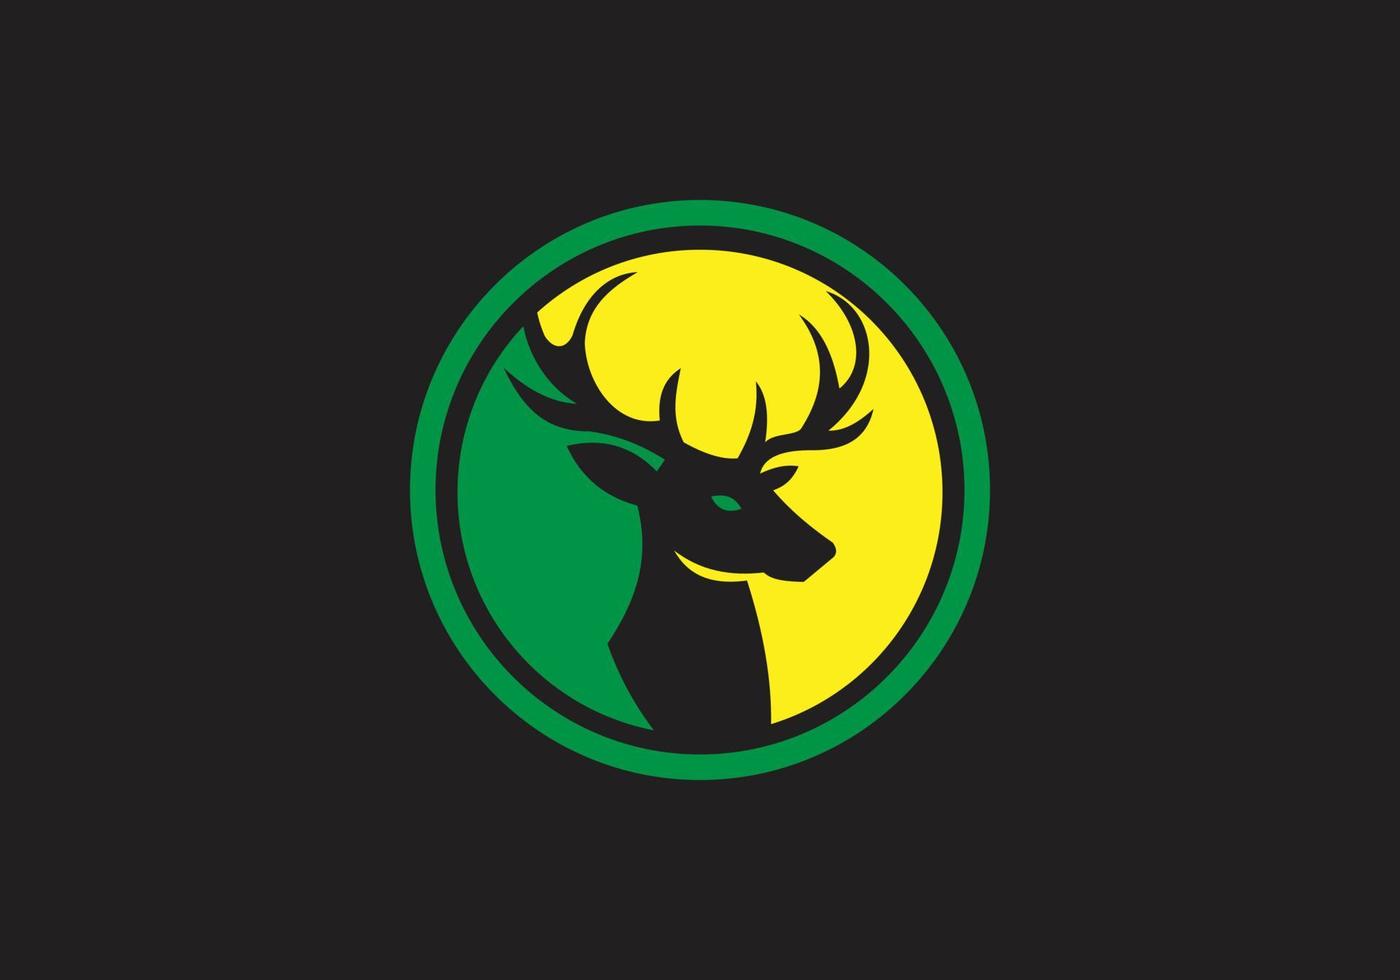 deze is een hert logo ontwerp vector